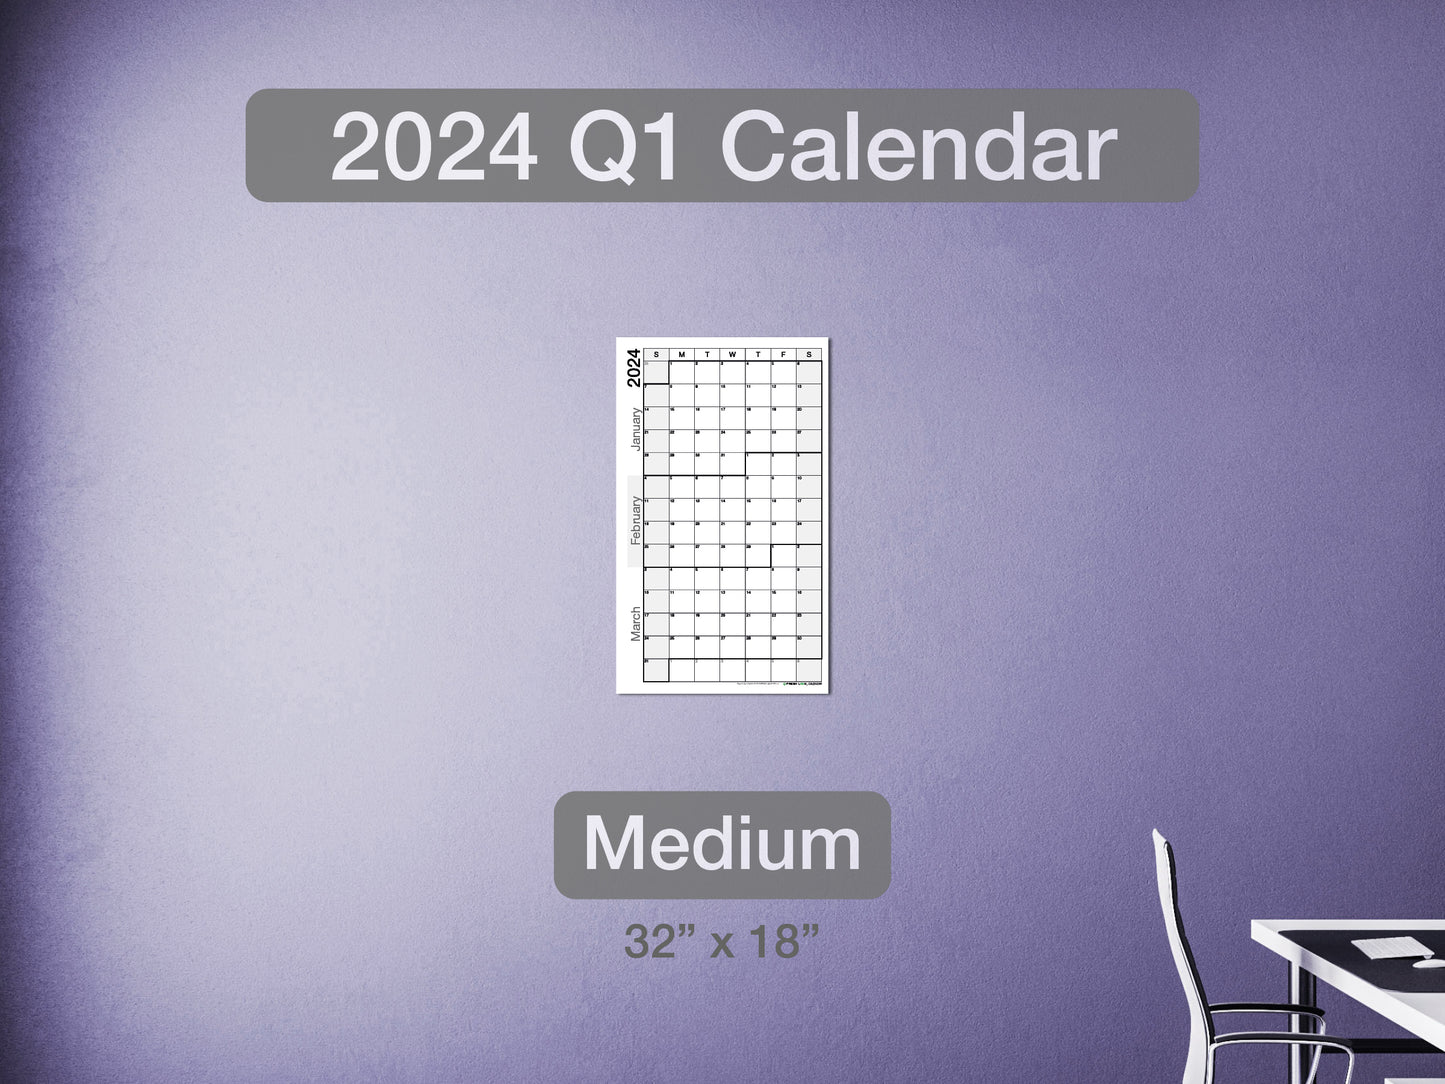 2024 Q1 Calendar Medium